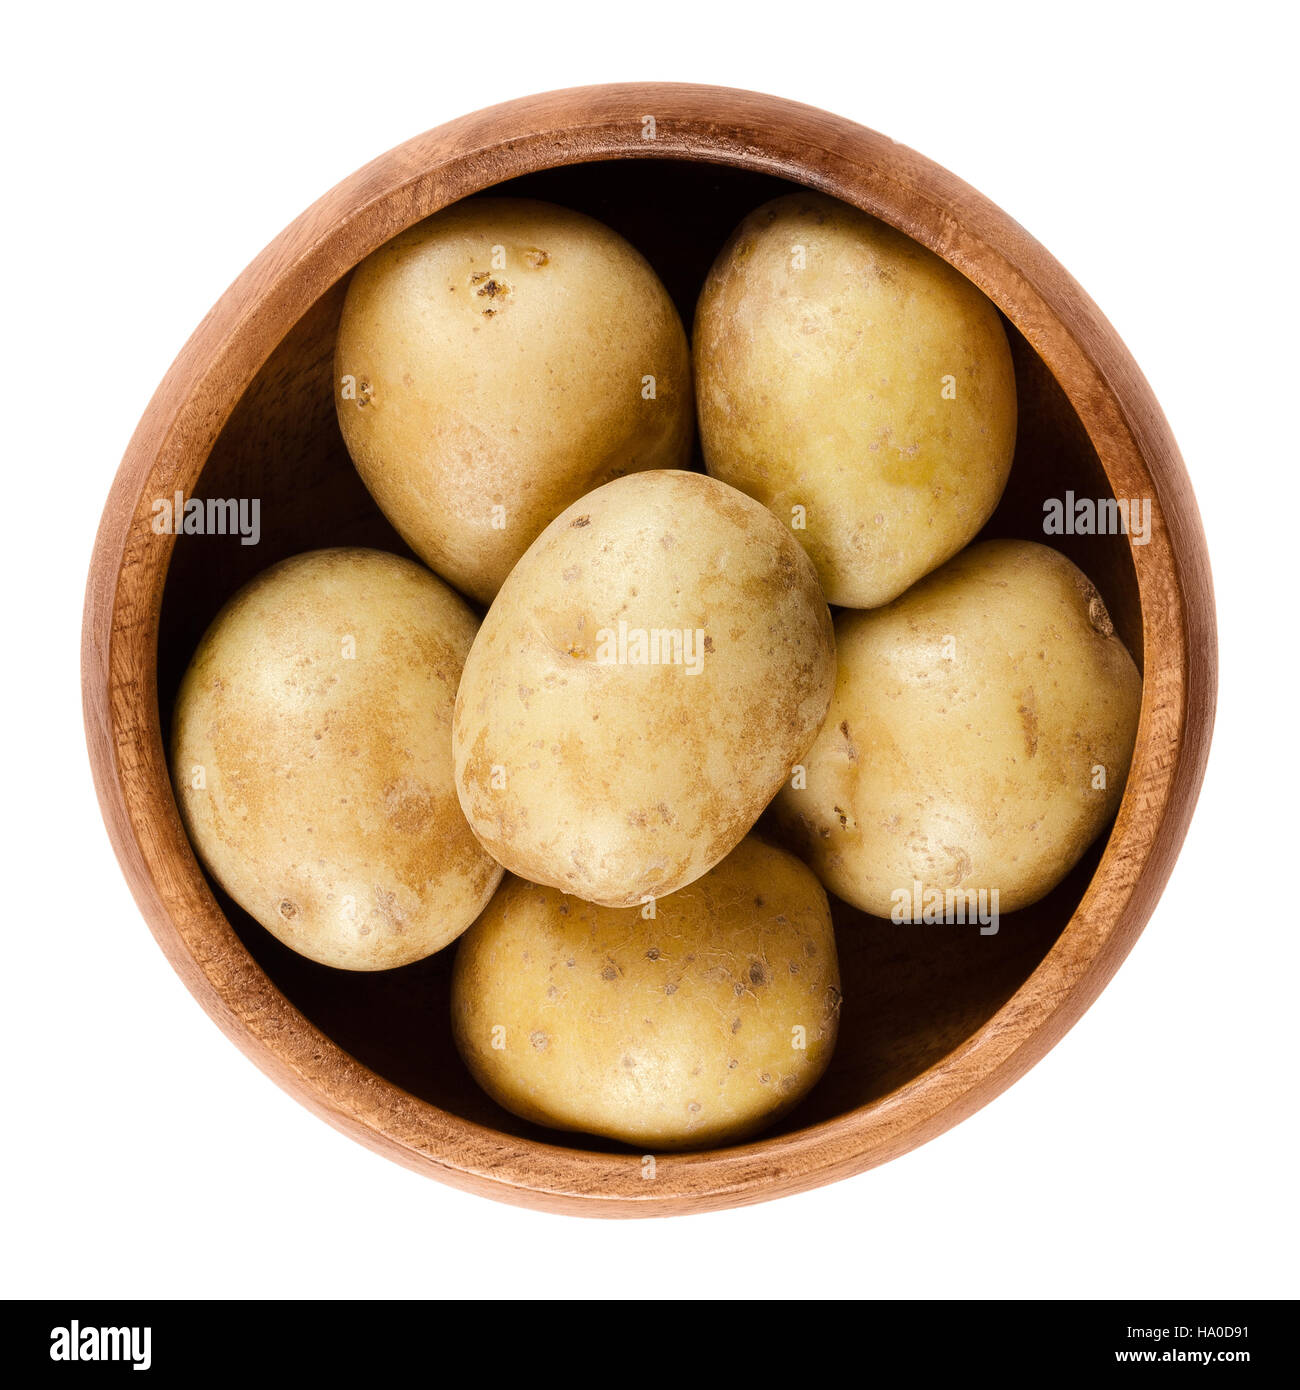 Materie mini le patate in una ciotola di legno. Tuberi commestibili di nightshade Solanum tuberosum, un prodotto amidaceo. Isolate il cibo macro foto. Foto Stock